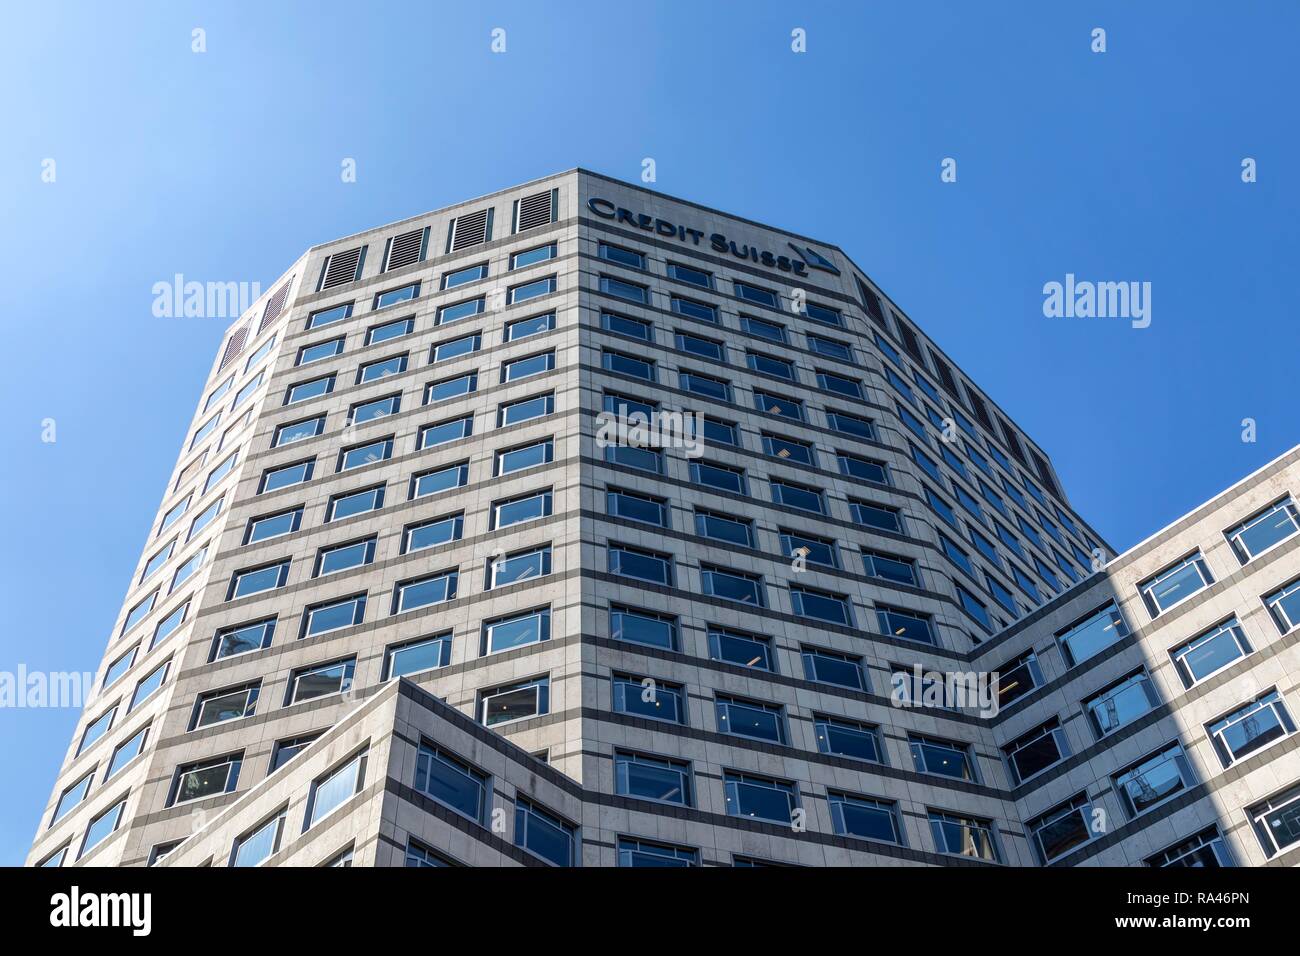 La banca svizzera Credit Suisse, quartiere finanziario e delle banche Canary Wharf, London, Regno Unito Foto Stock